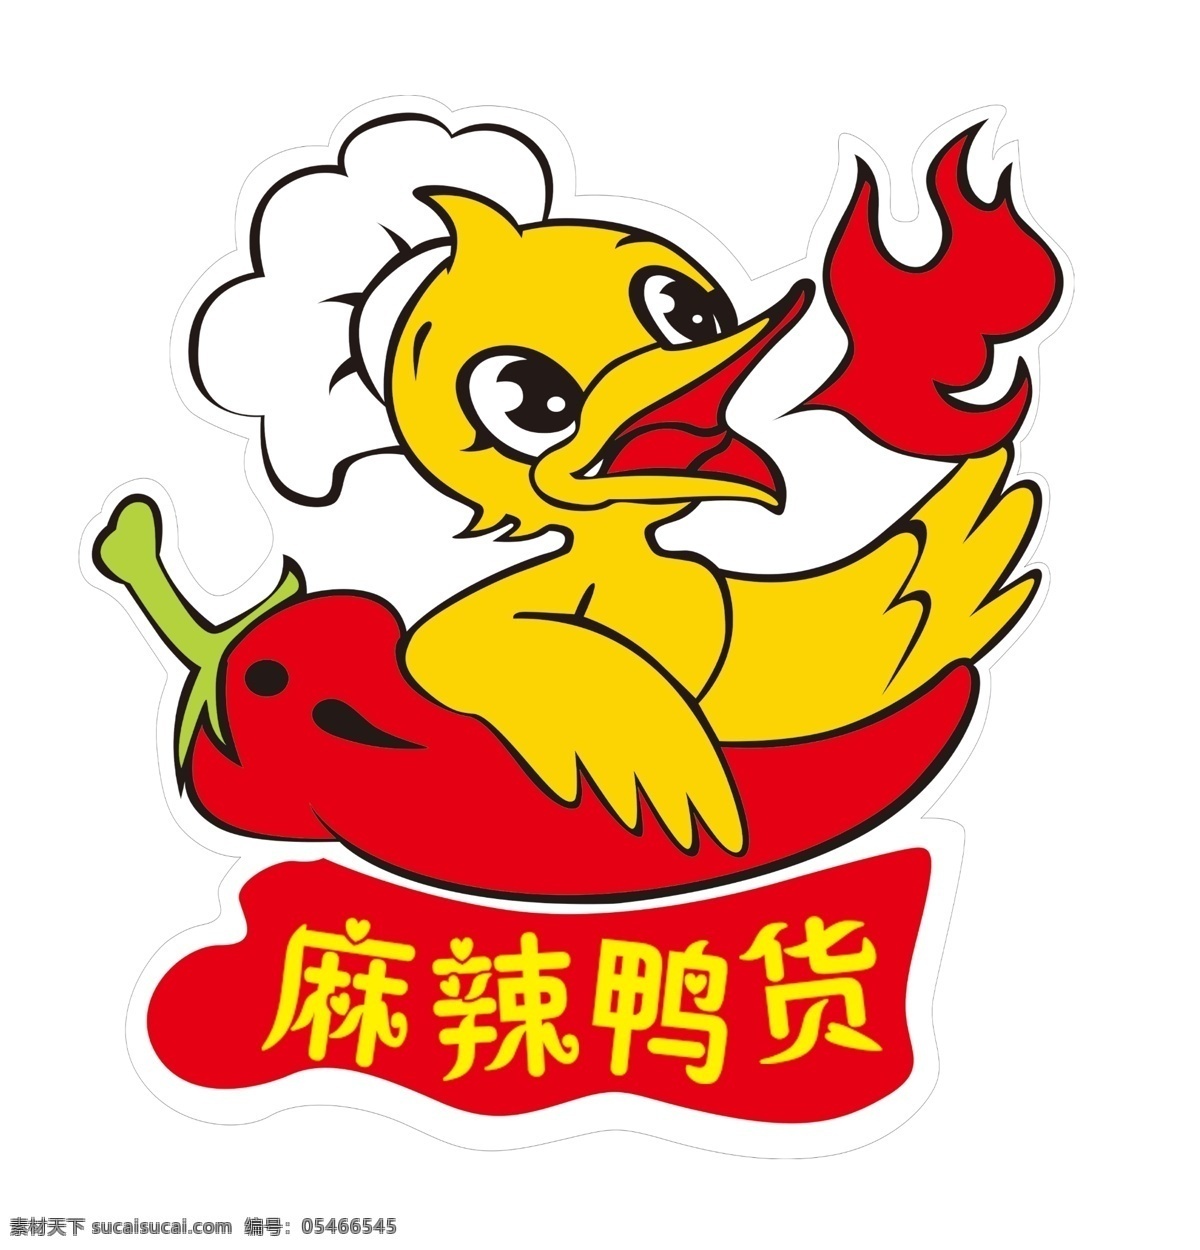 卡通鸭 鸭货 麻辣鸭货 麻辣鸭坊 鸭头 鸭锁骨 logo设计